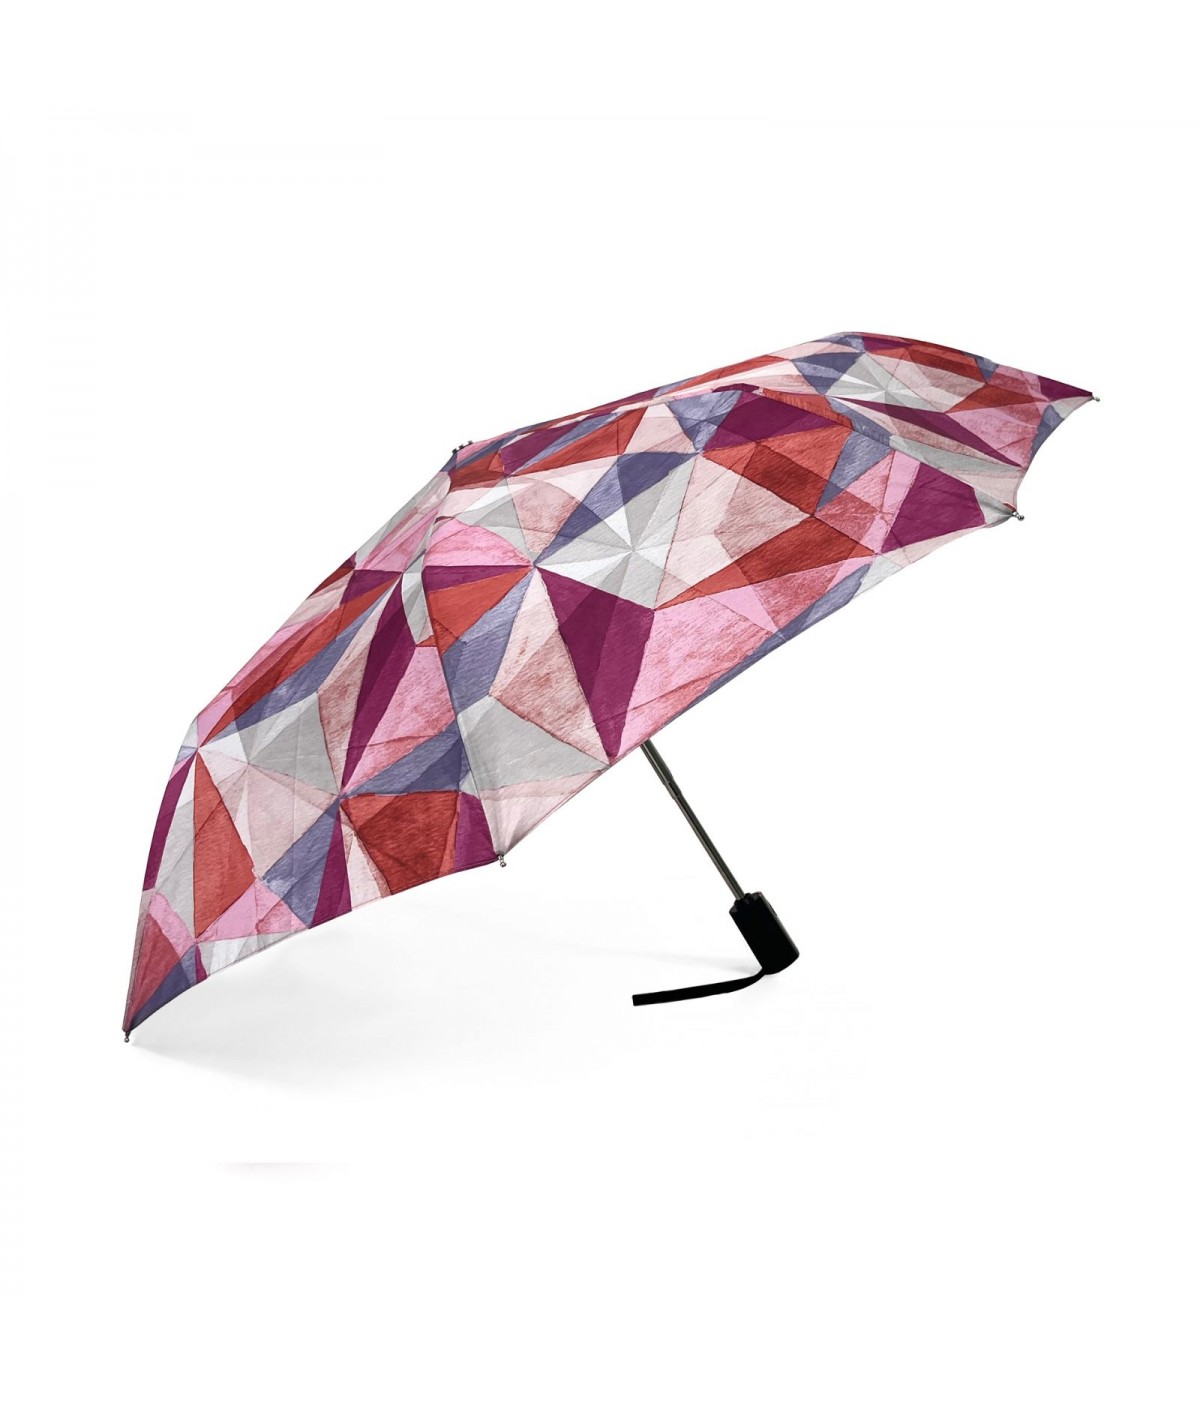 → Parapluie Imprimé Fantaisie - Pliant Automatique - Made in France par Maison Pierre Vaux Fabricant Français de Parapluie